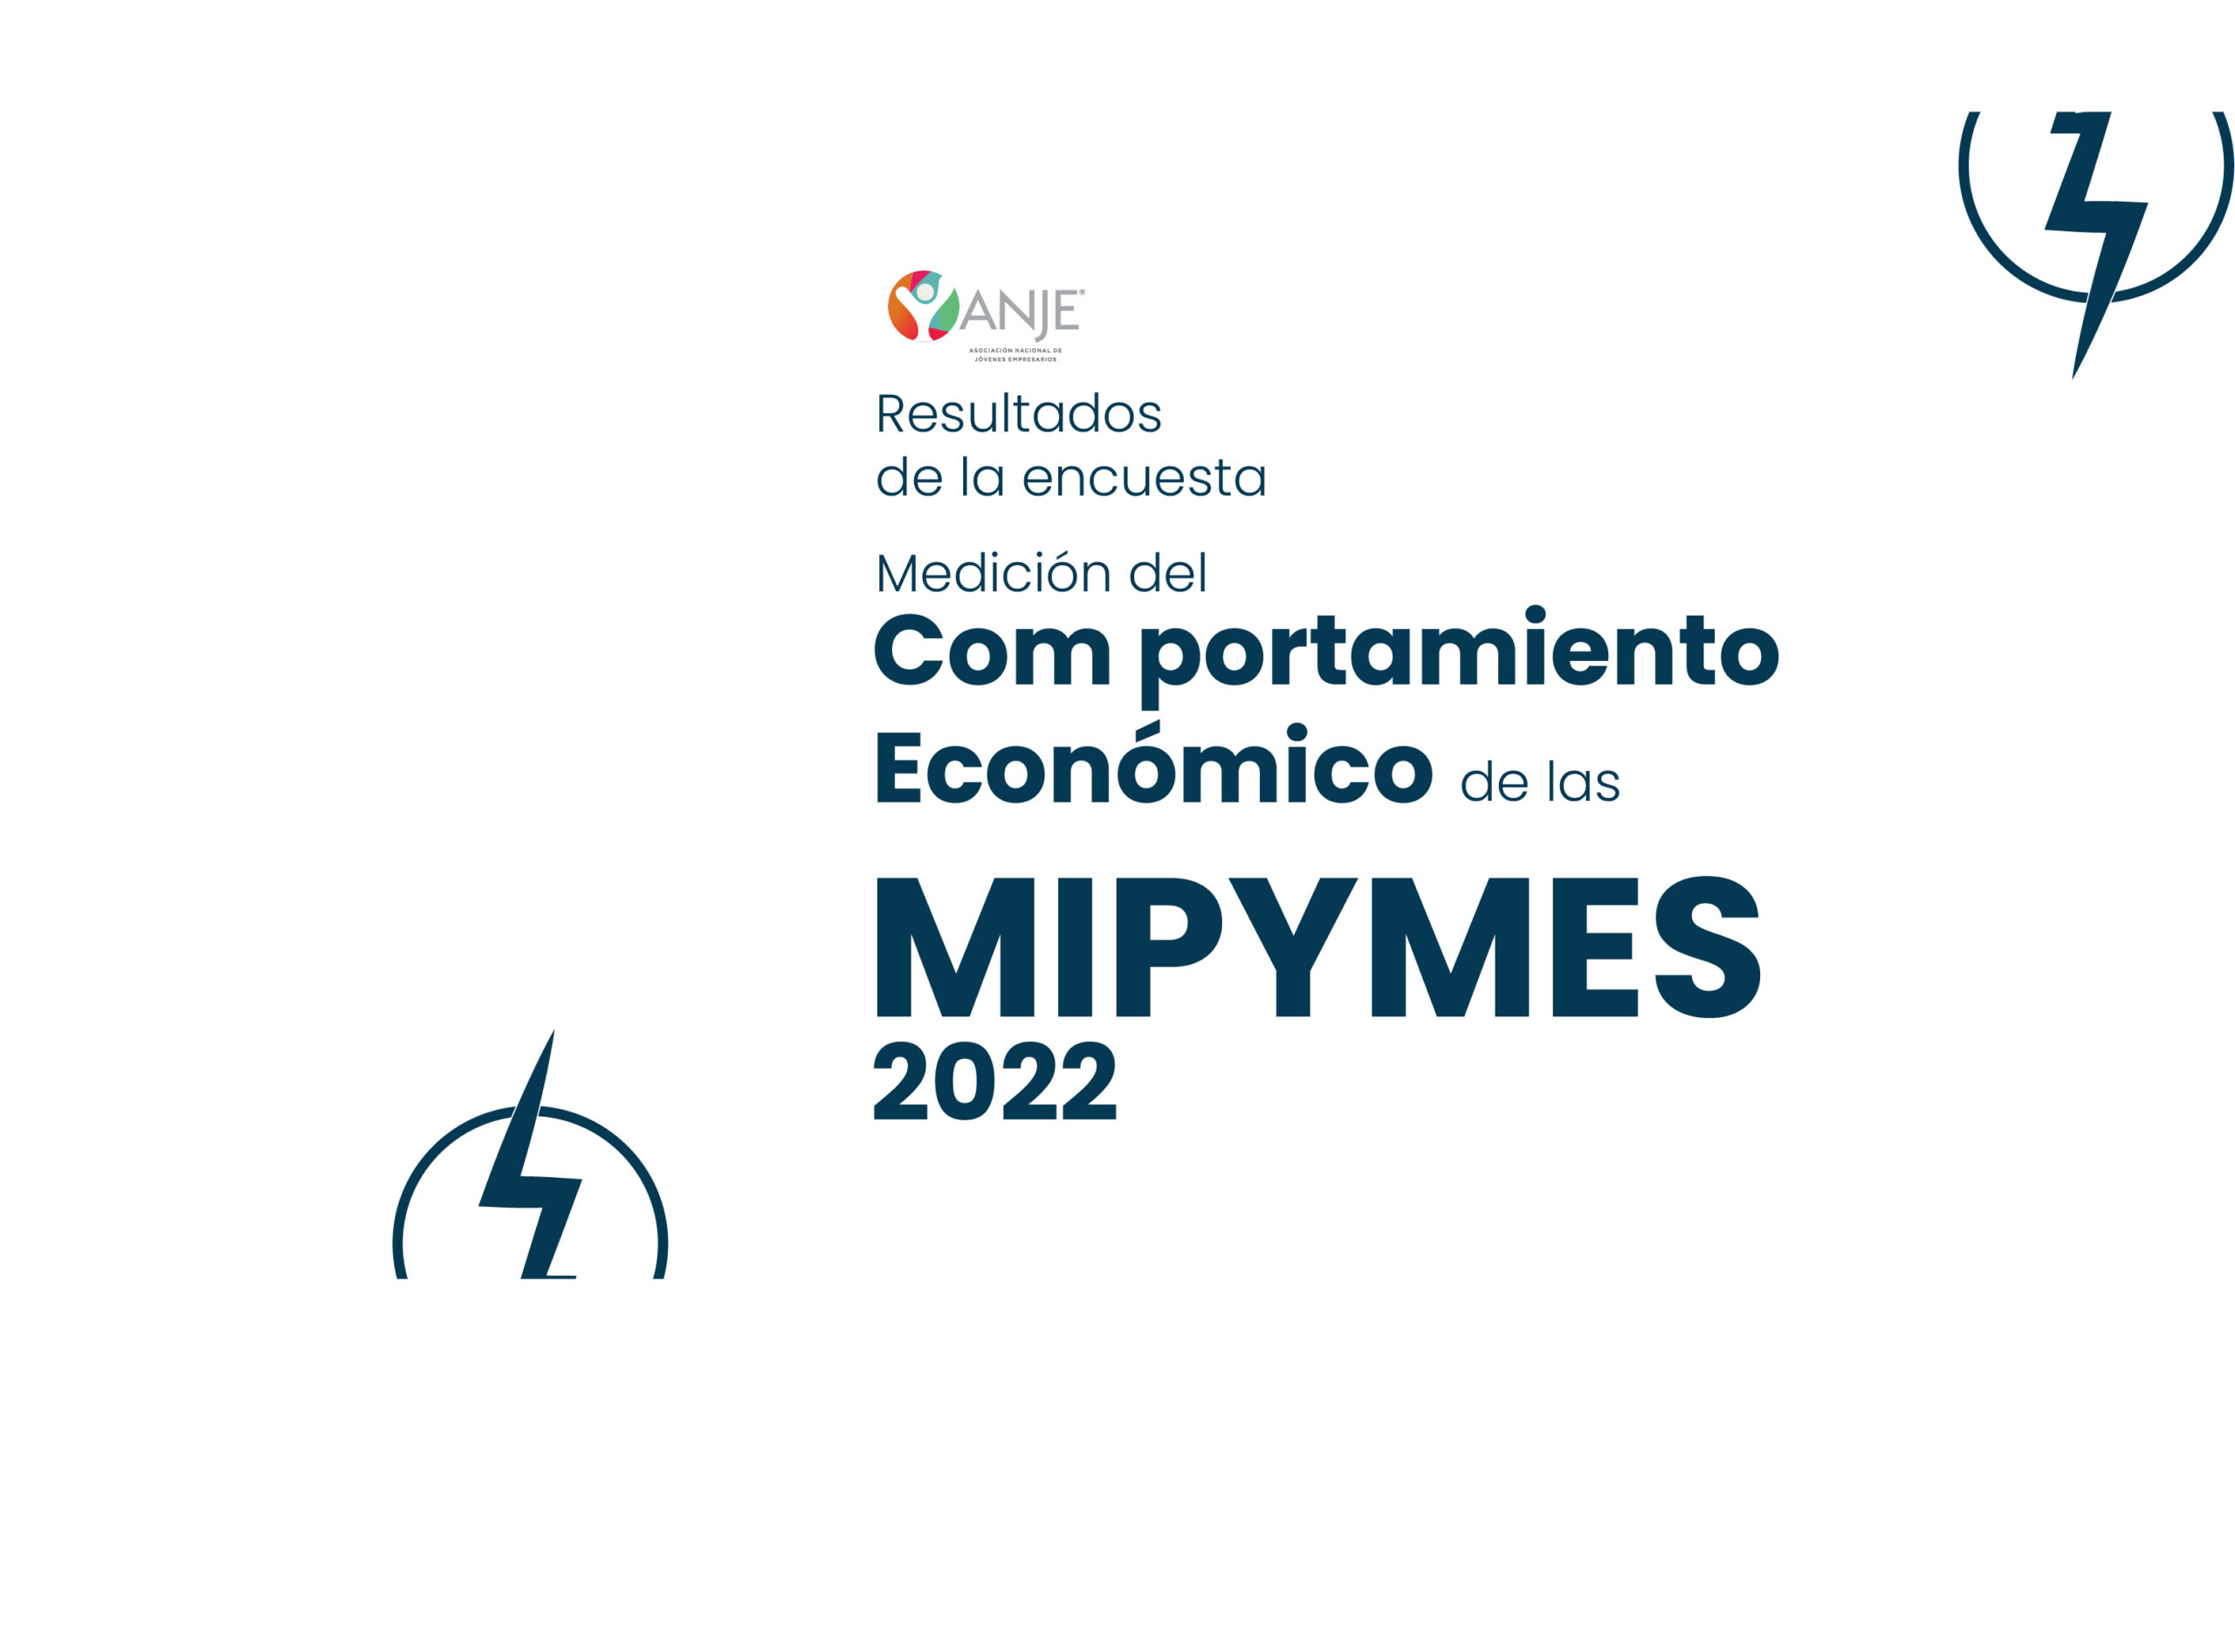 Encuesta de Medición del Comportamiento  Económico de las MIPYMES 2022